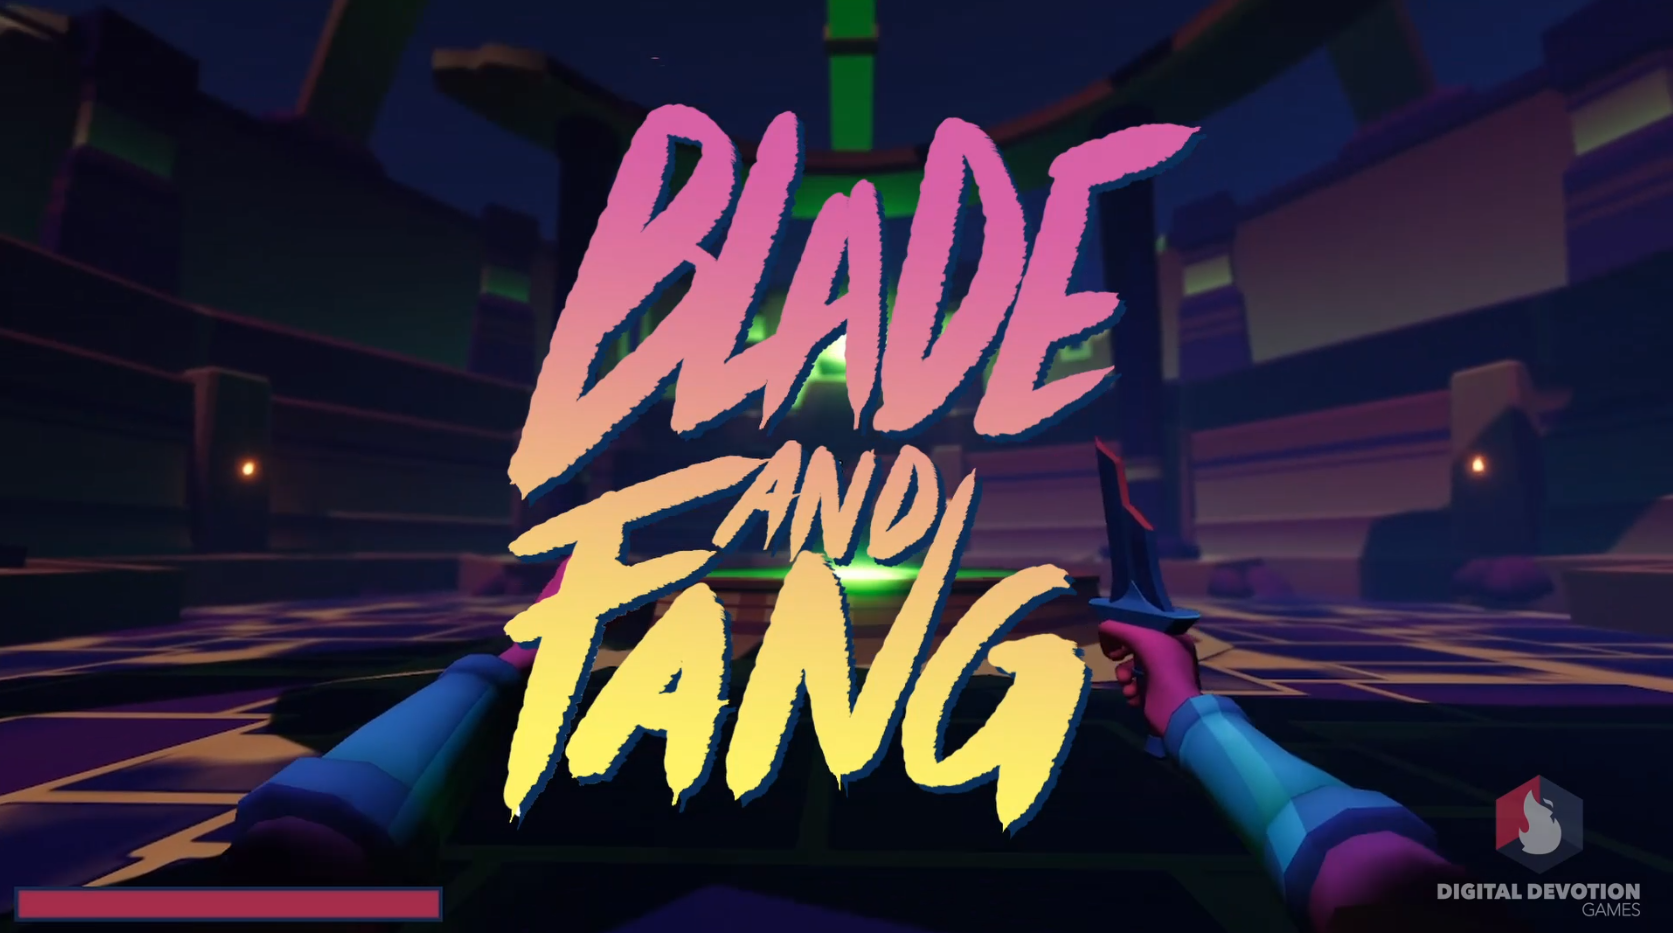 Blade & Fang